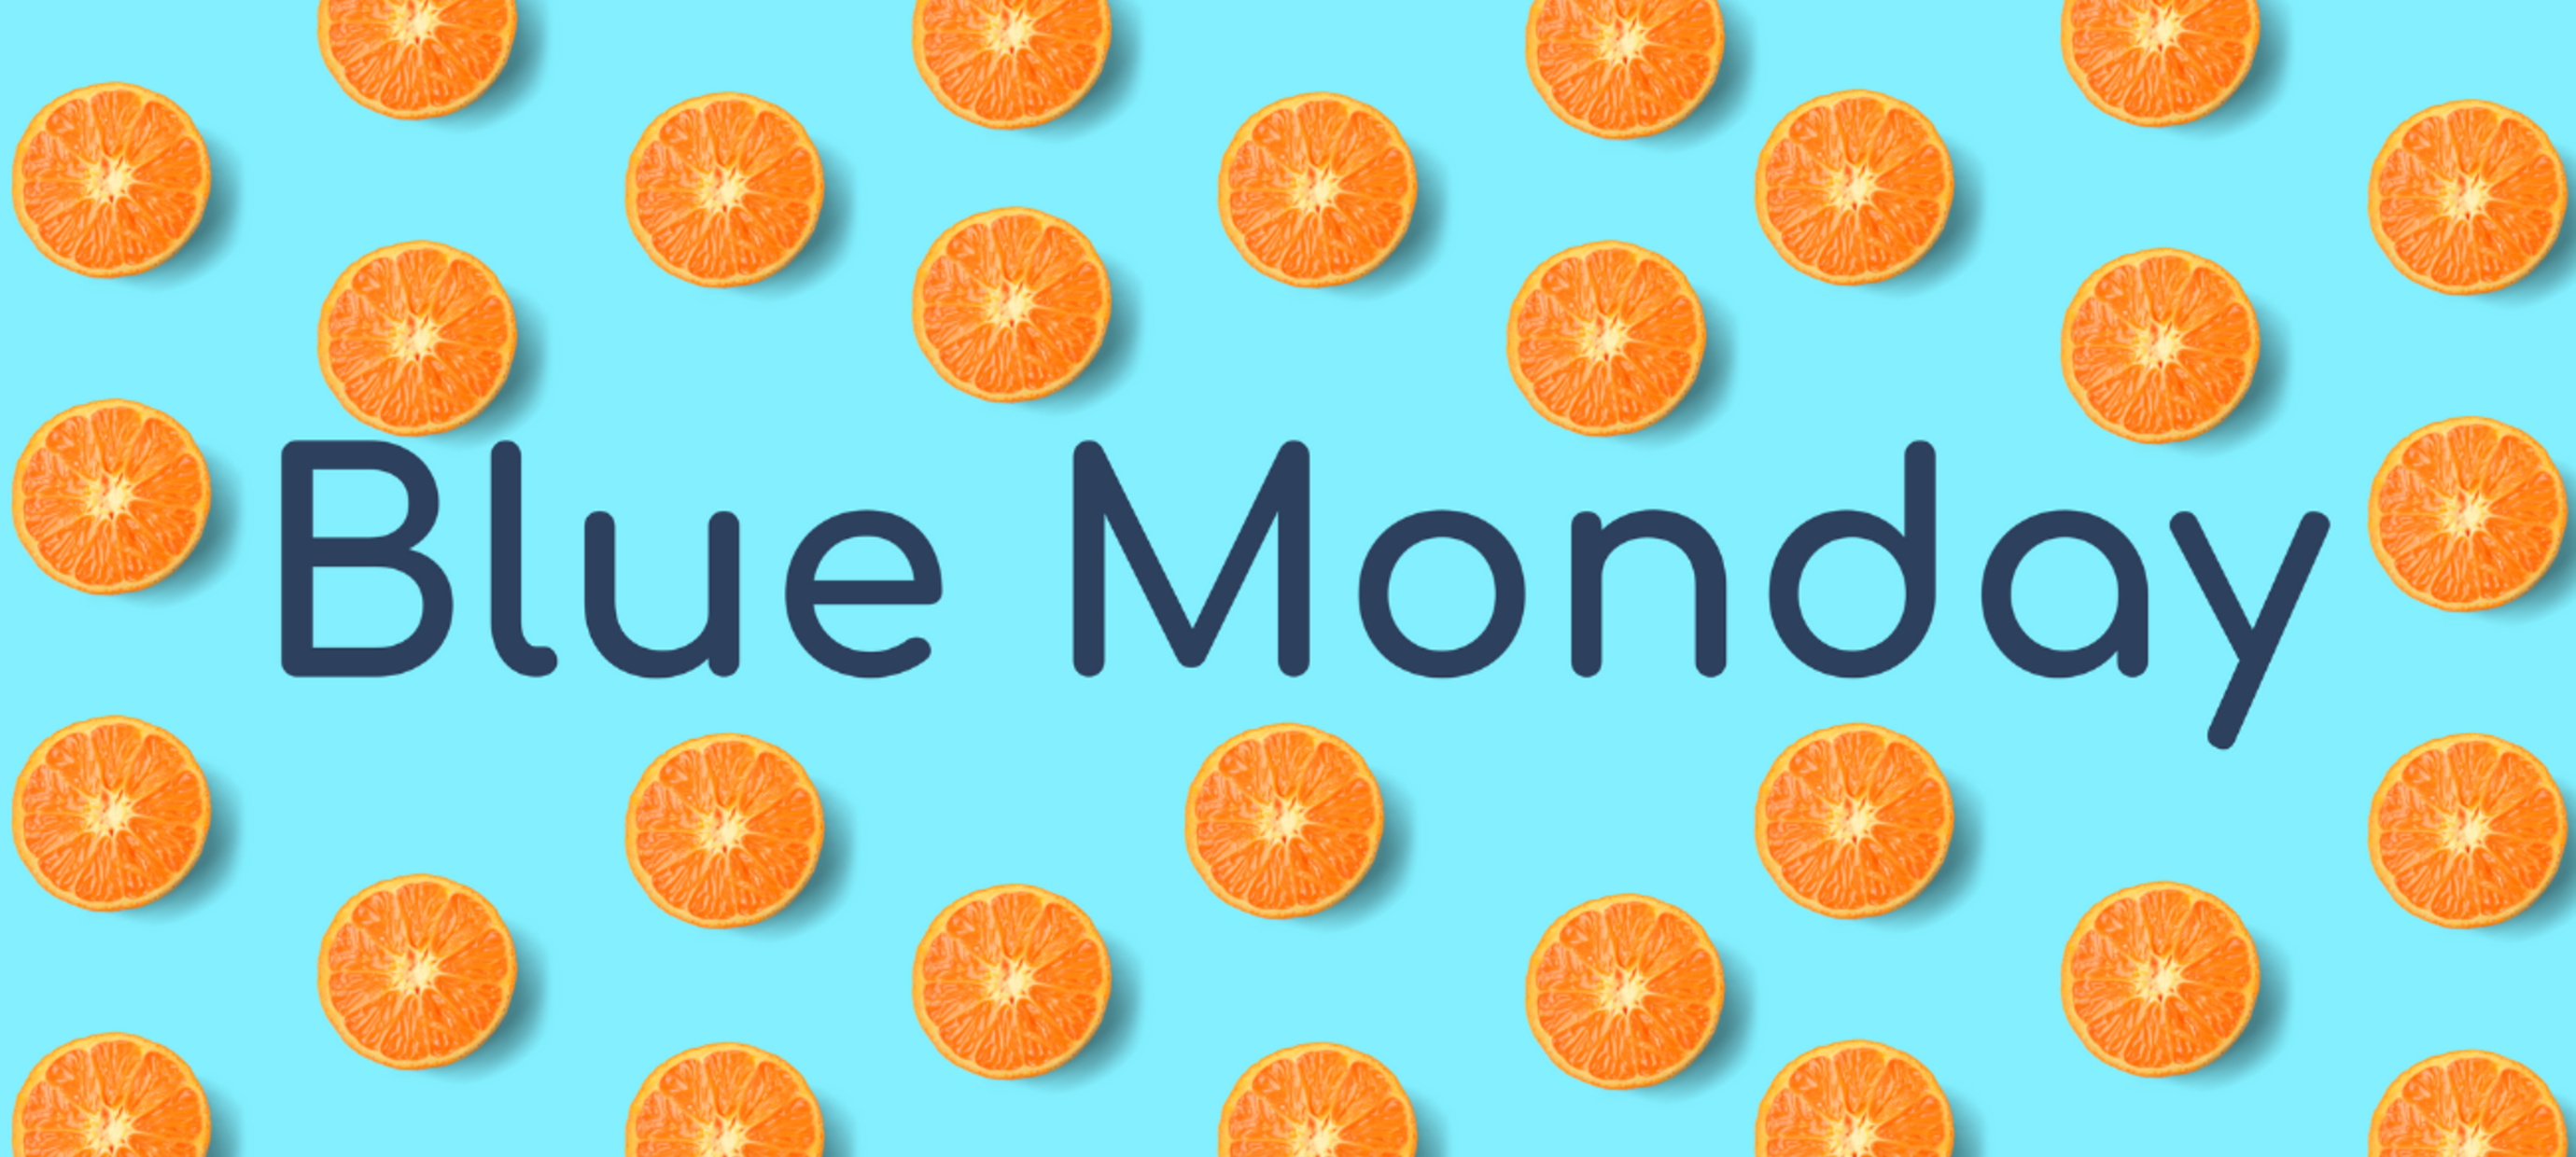 Blue Monday - de meest deprimerende dag van het jaar?  Welnee!